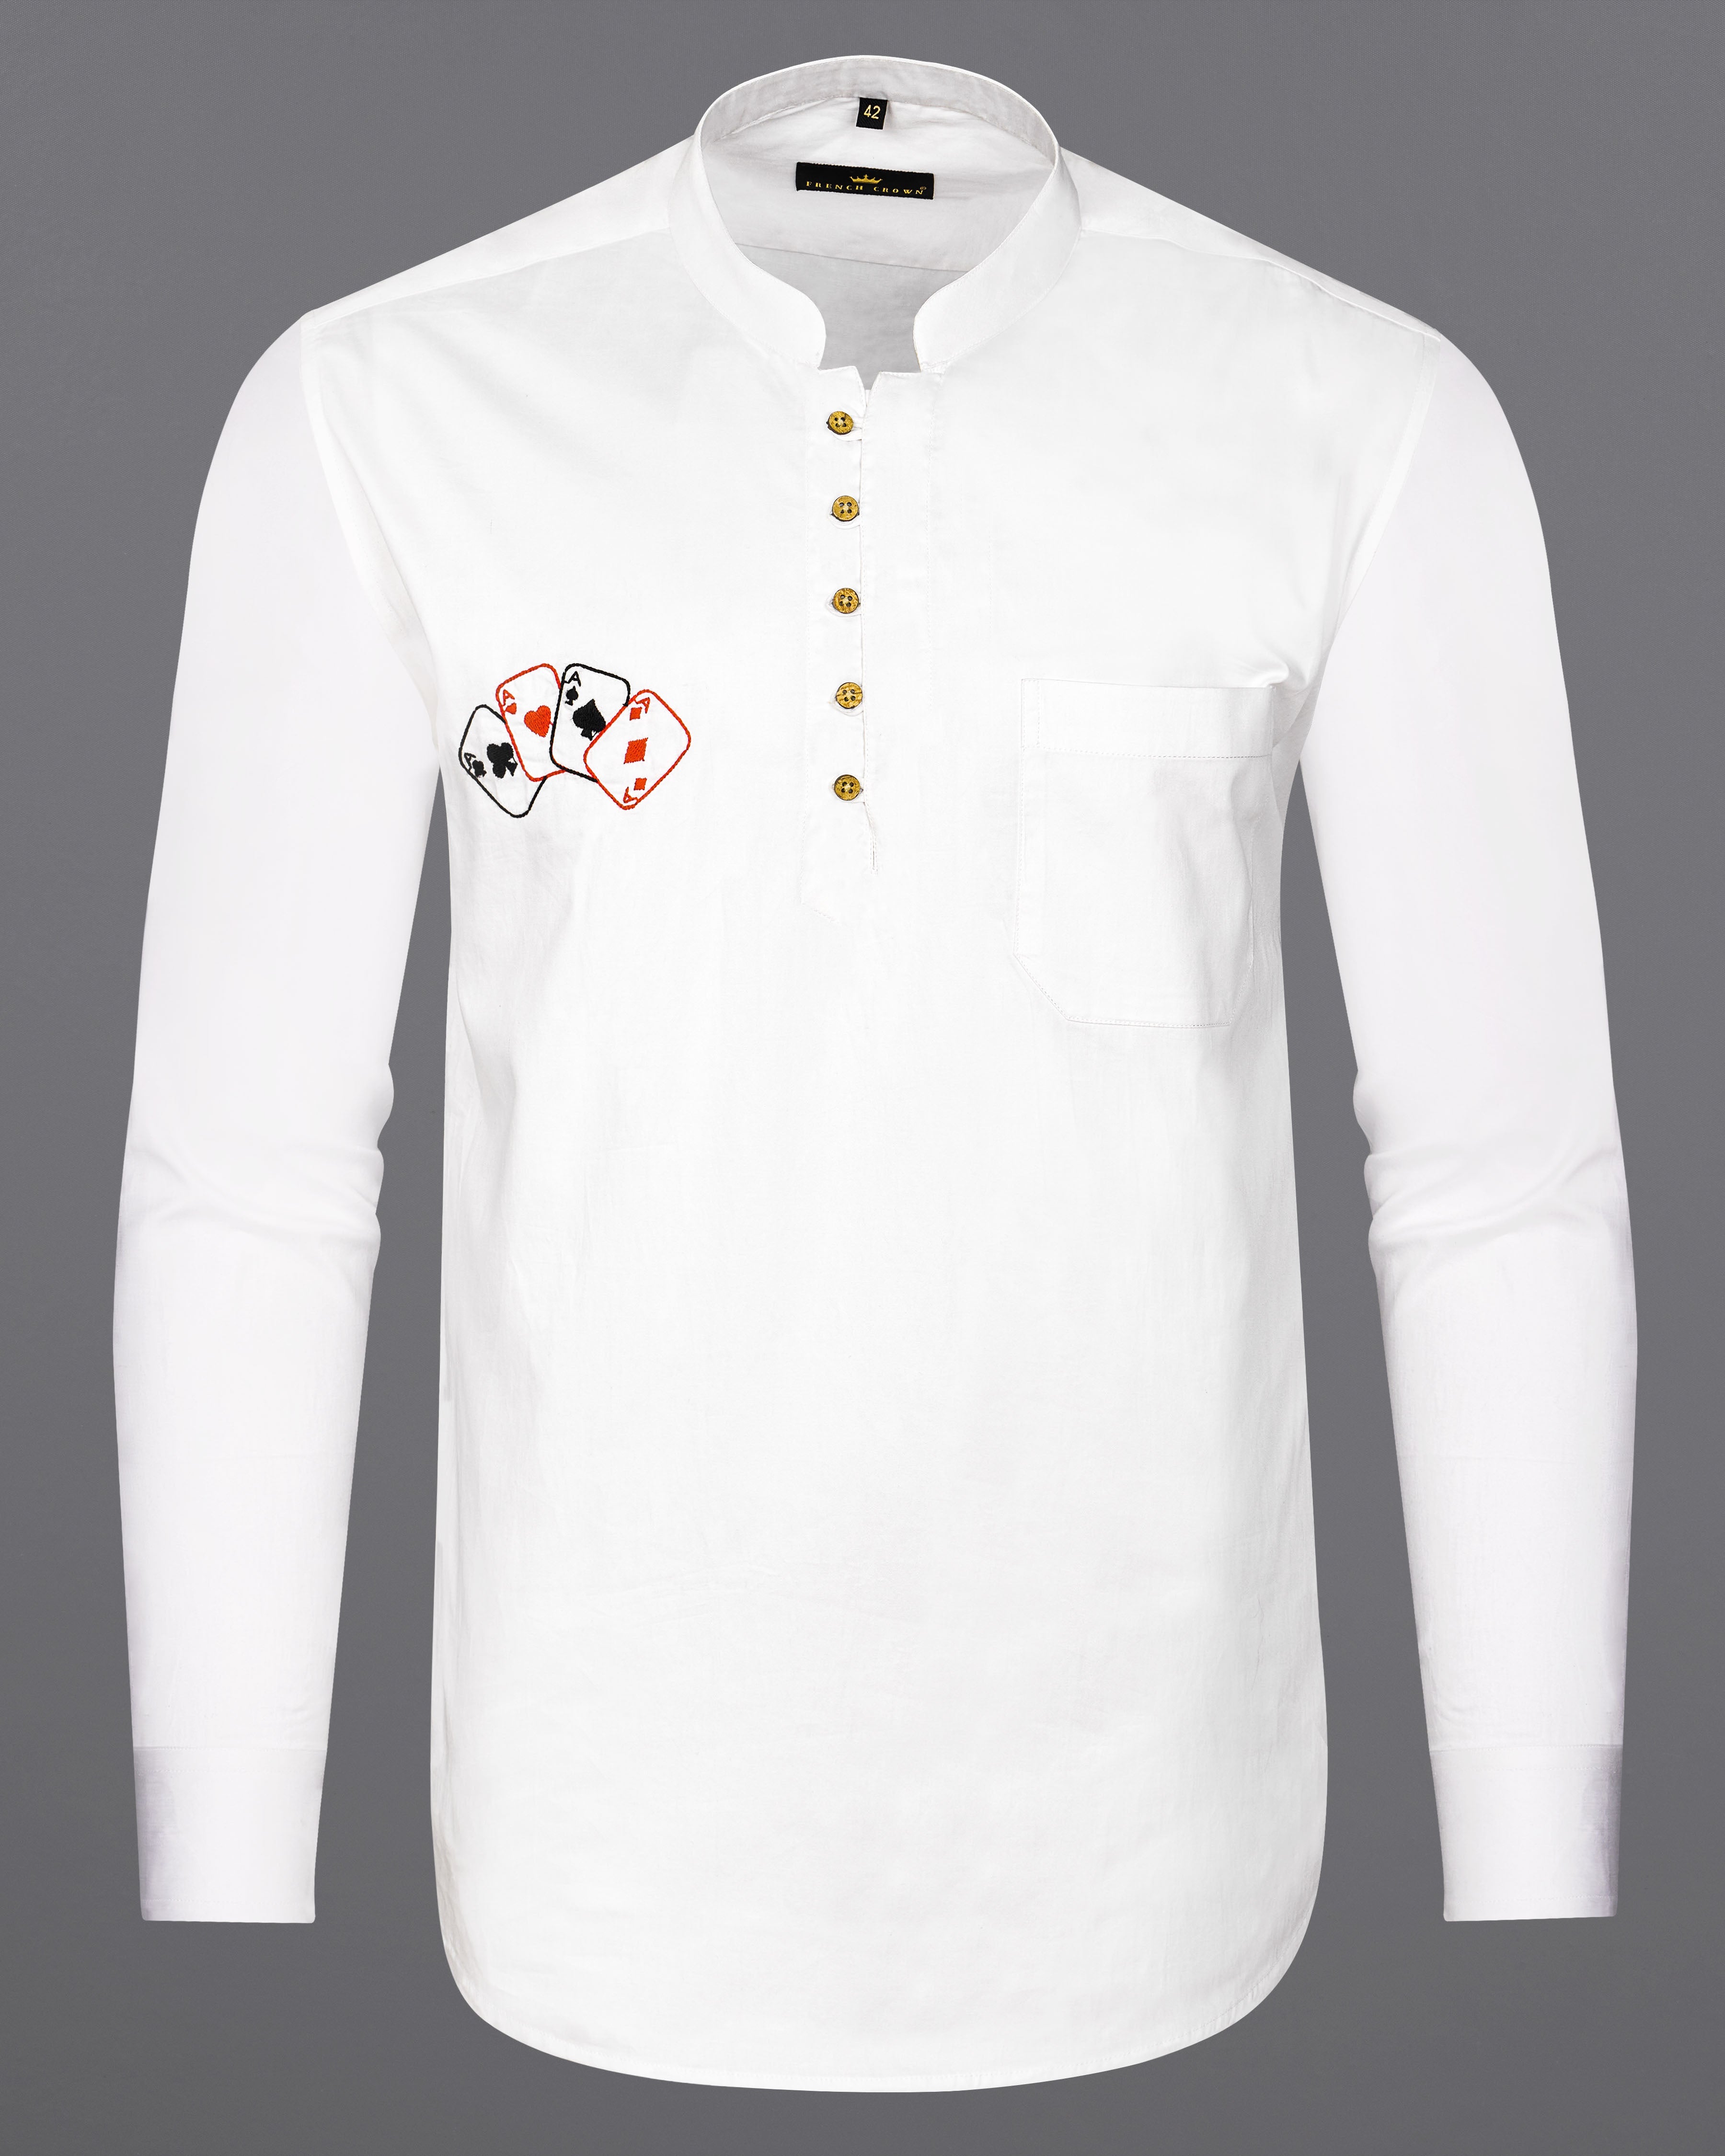 Bright White with Multicolour Card Embroidered Super Soft Premium Cotton Kurta Shirt 2670-KS-E027-38, 2670-KS-E027-H-38, 2670-KS-E027-39, 2670-KS-E027-H-39, 2670-KS-E027-40, 2670-KS-E027-H-40, 2670-KS-E027-42, 2670-KS-E027-H-42, 2670-KS-E027-44, 2670-KS-E027-H-44, 2670-KS-E027-46, 2670-KS-E027-H-46, 2670-KS-E027-48, 2670-KS-E027-H-48, 2670-KS-E027-50, 2670-KS-E027-H-50, 2670-KS-E027-52, 2670-KS-E027-H-52